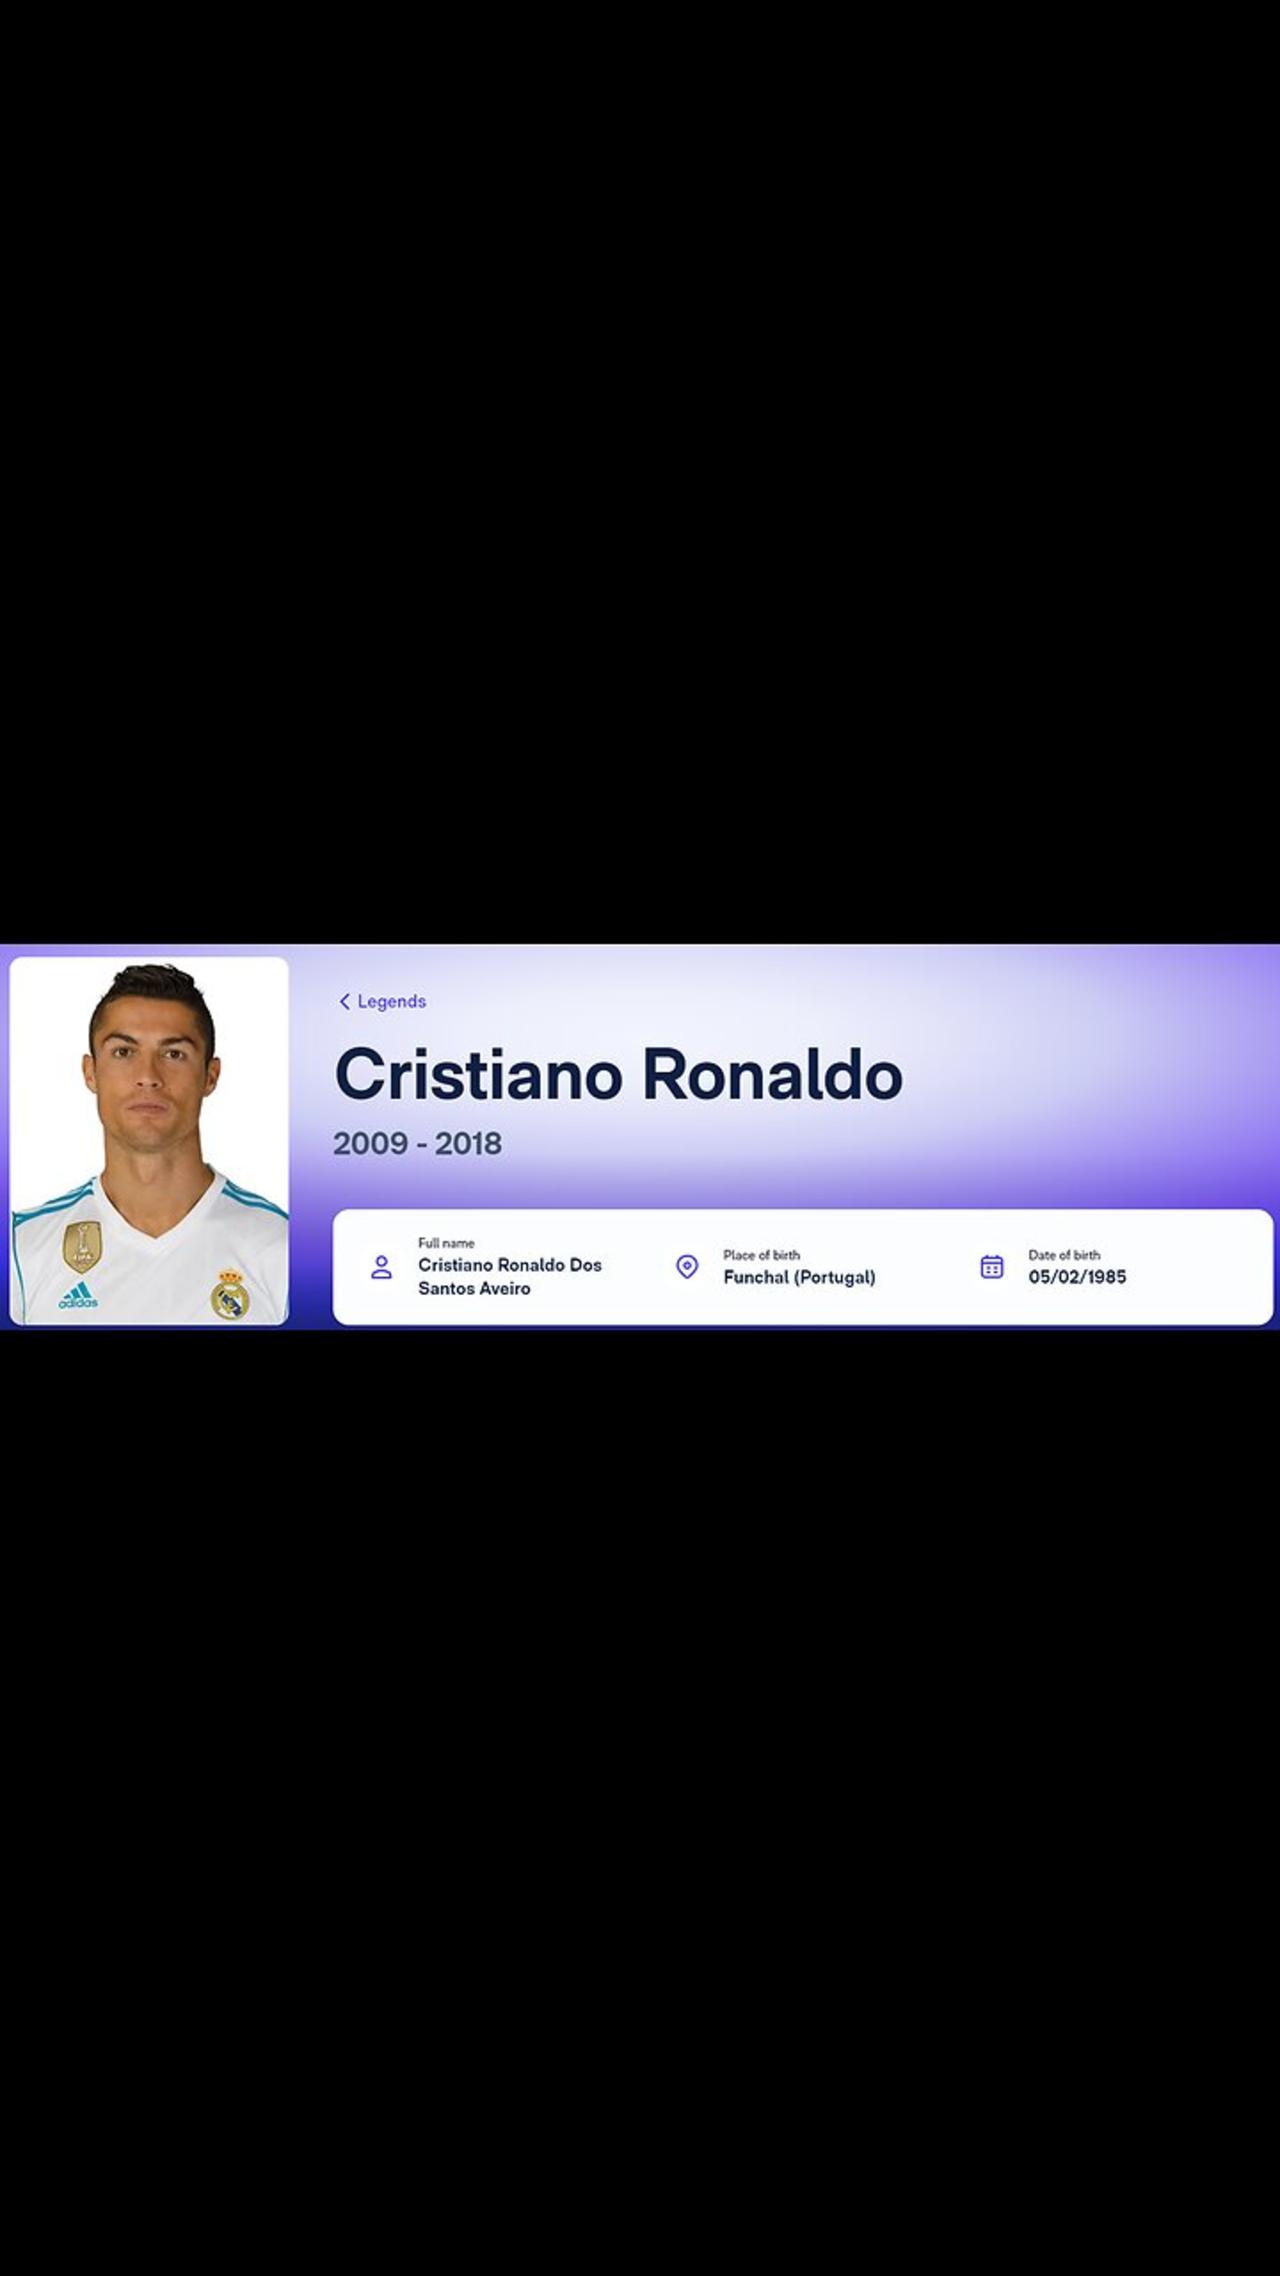 Cristiano Ronaldo Temporada 2009 -2010 (part 1)